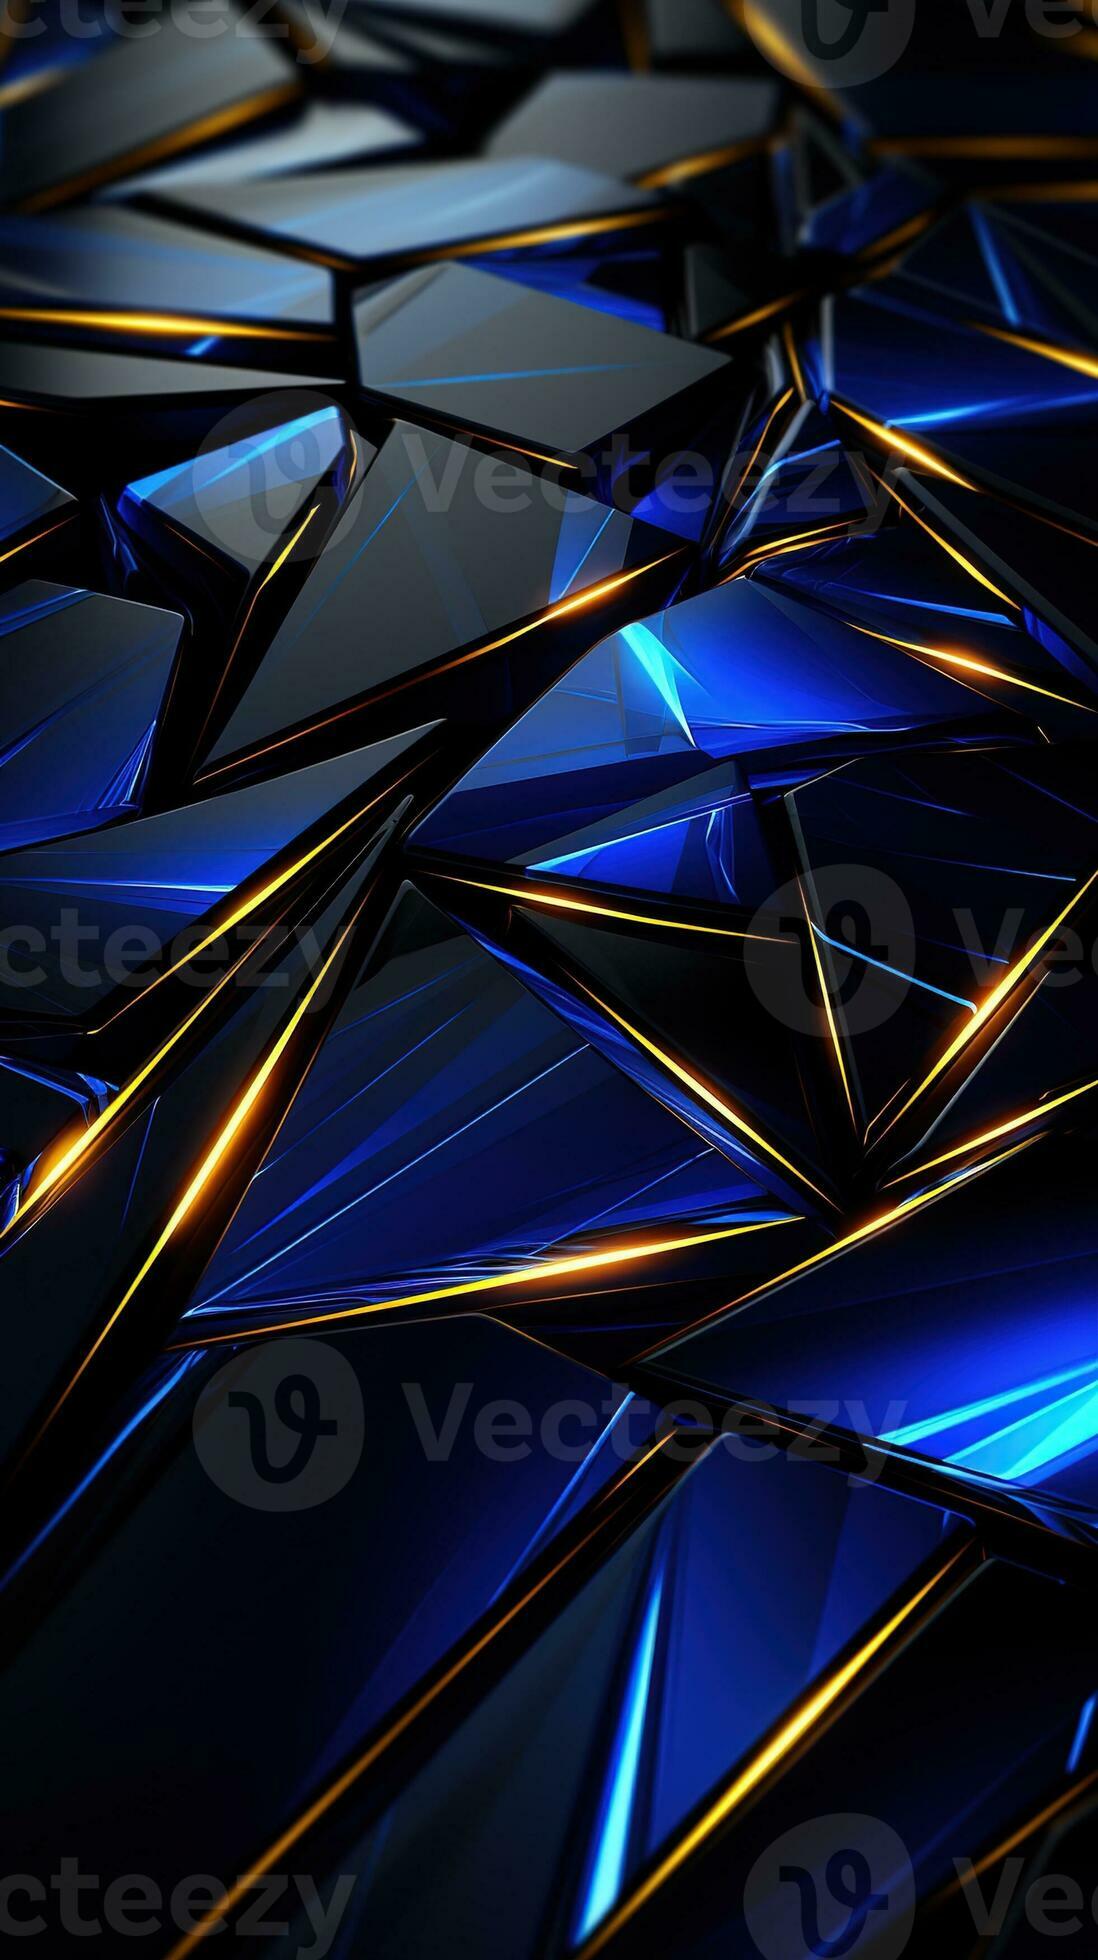 https://static.vecteezy.com/ti/photos-gratuite/p2/28133620-metallique-bleu-et-noir-fond-d-ecran-dans-une-technologie-style-haute-resolution-generatif-ai-photo.jpg